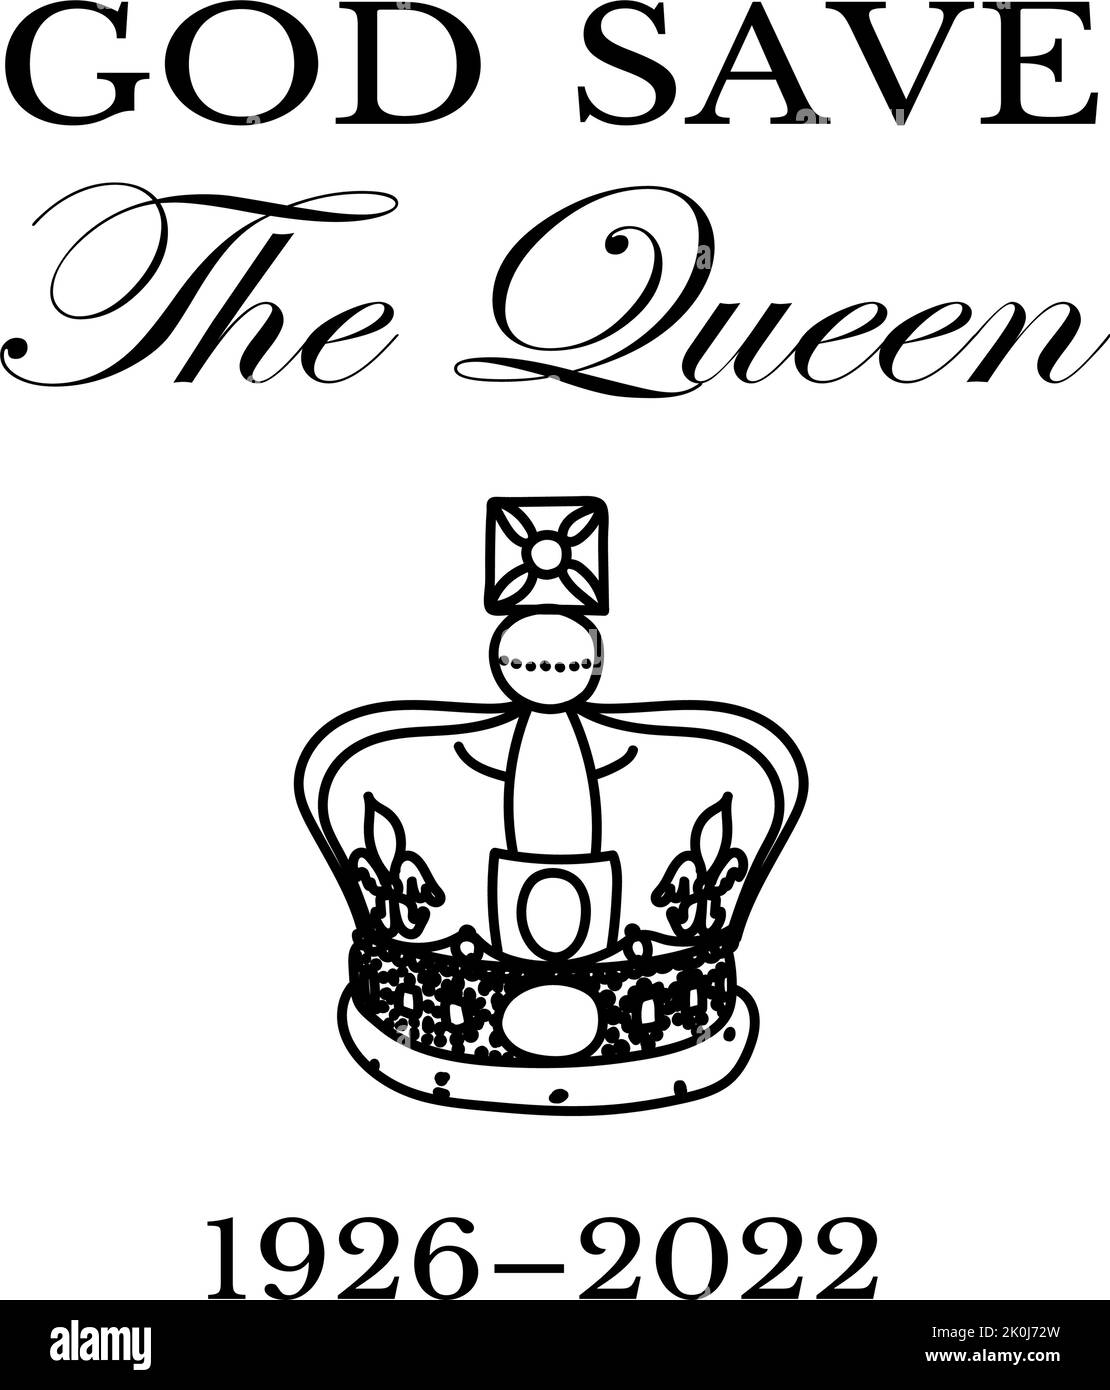 La mort de Queens. RIP, Dieu sauve la Reine. Affiche de repos dans la paix avec silhouette sur fond de drapeau. Illustration vectorielle pour sa Majesté sur ses 96 années de service 1926 - 2022 Illustration de Vecteur